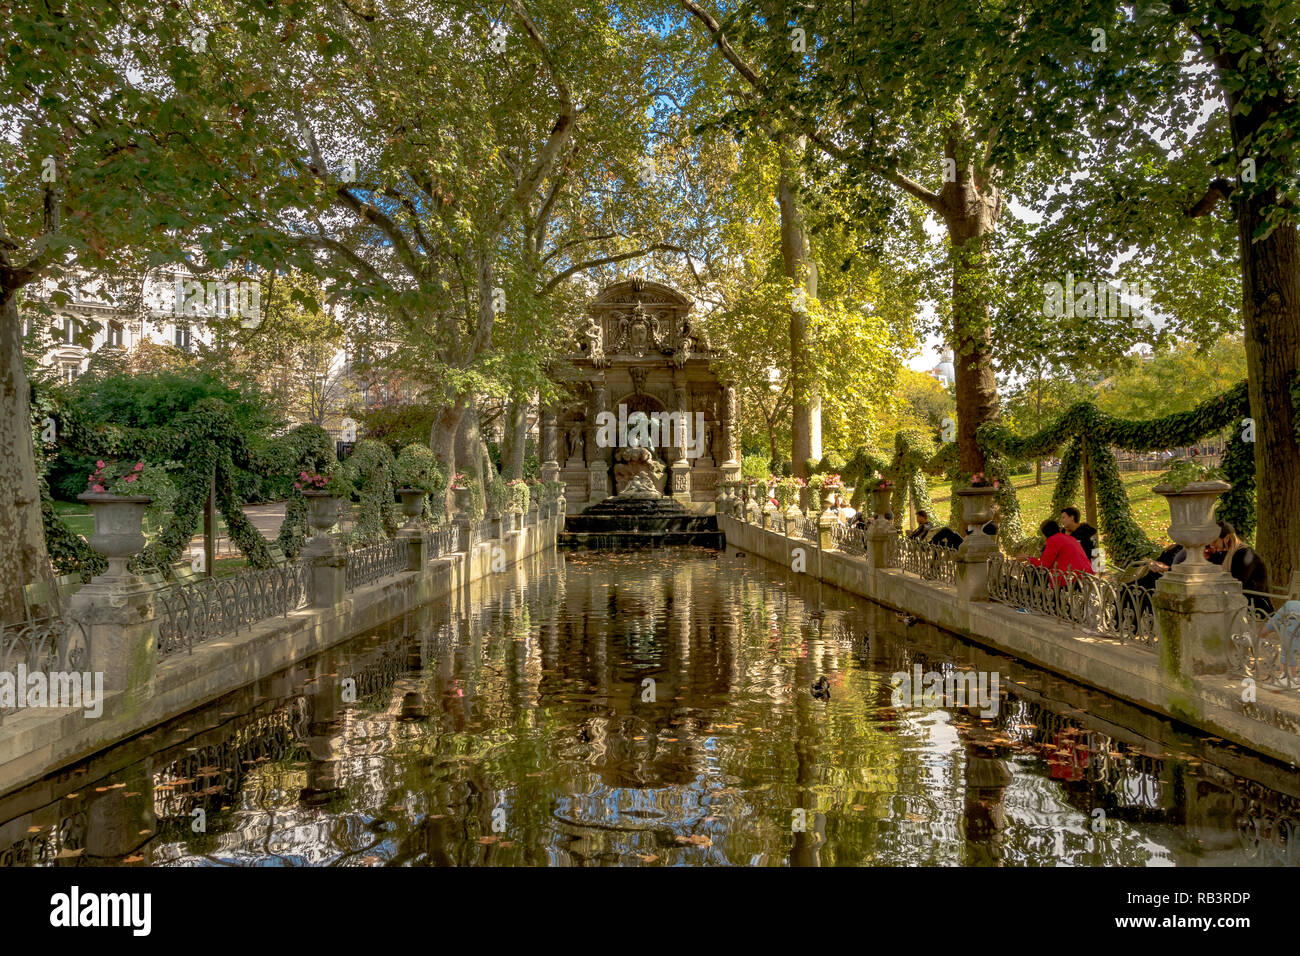 Gente sentada junto al estanque en la Fuente de Medici o Fontaine de Medicis, una fuente monumental, en un día de verano en el Jardín de Luxemburgo, París Foto de stock